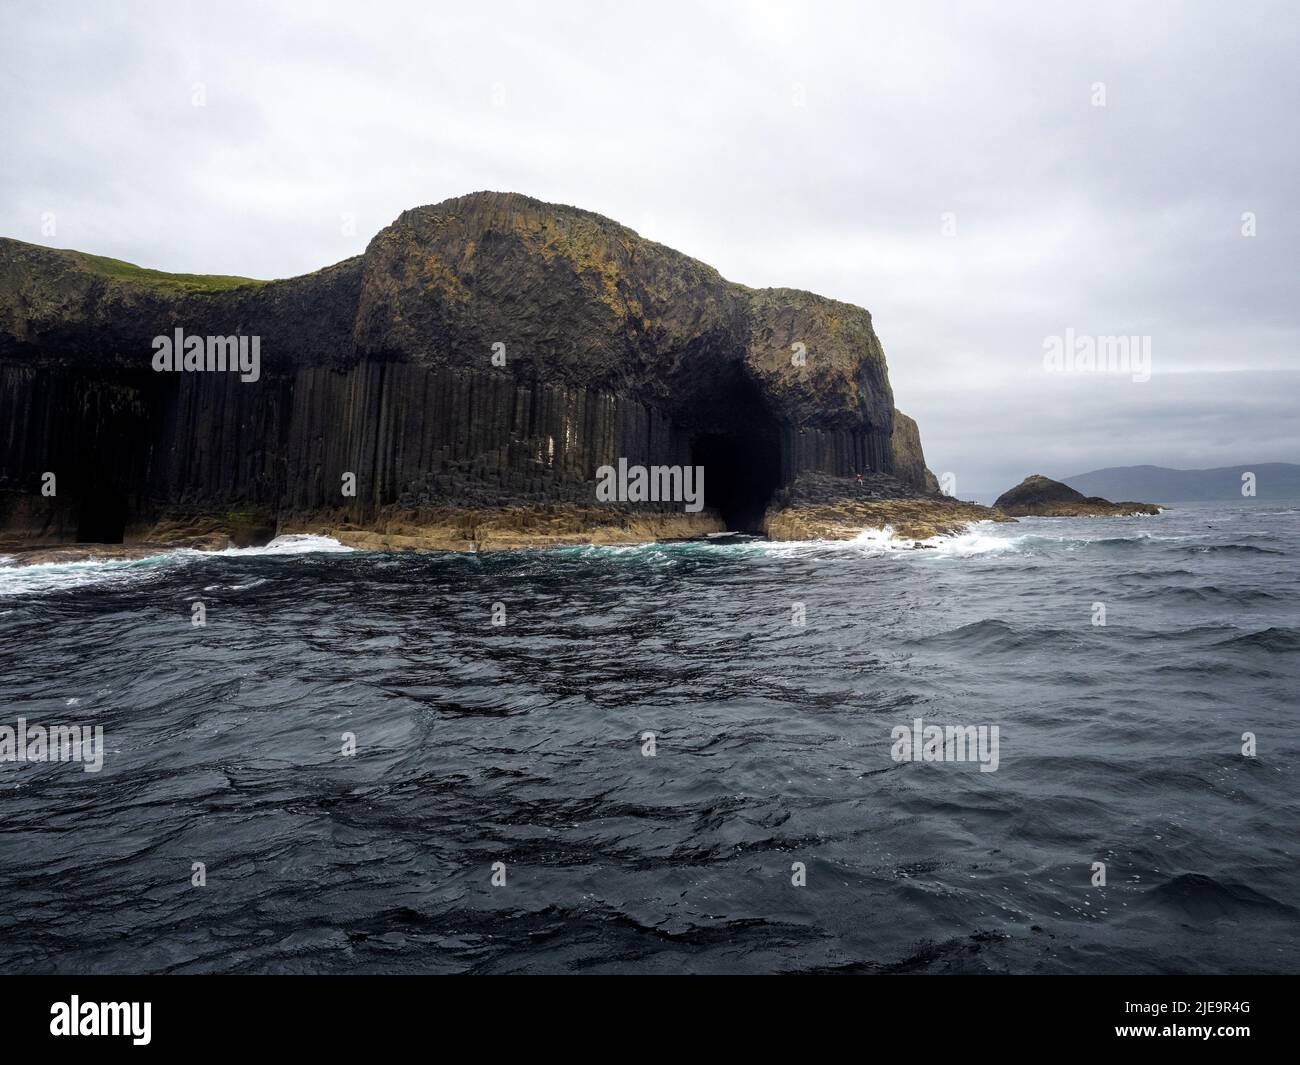 Staffa island off the coast of the Isle of Mull, Scotland Stock Photo